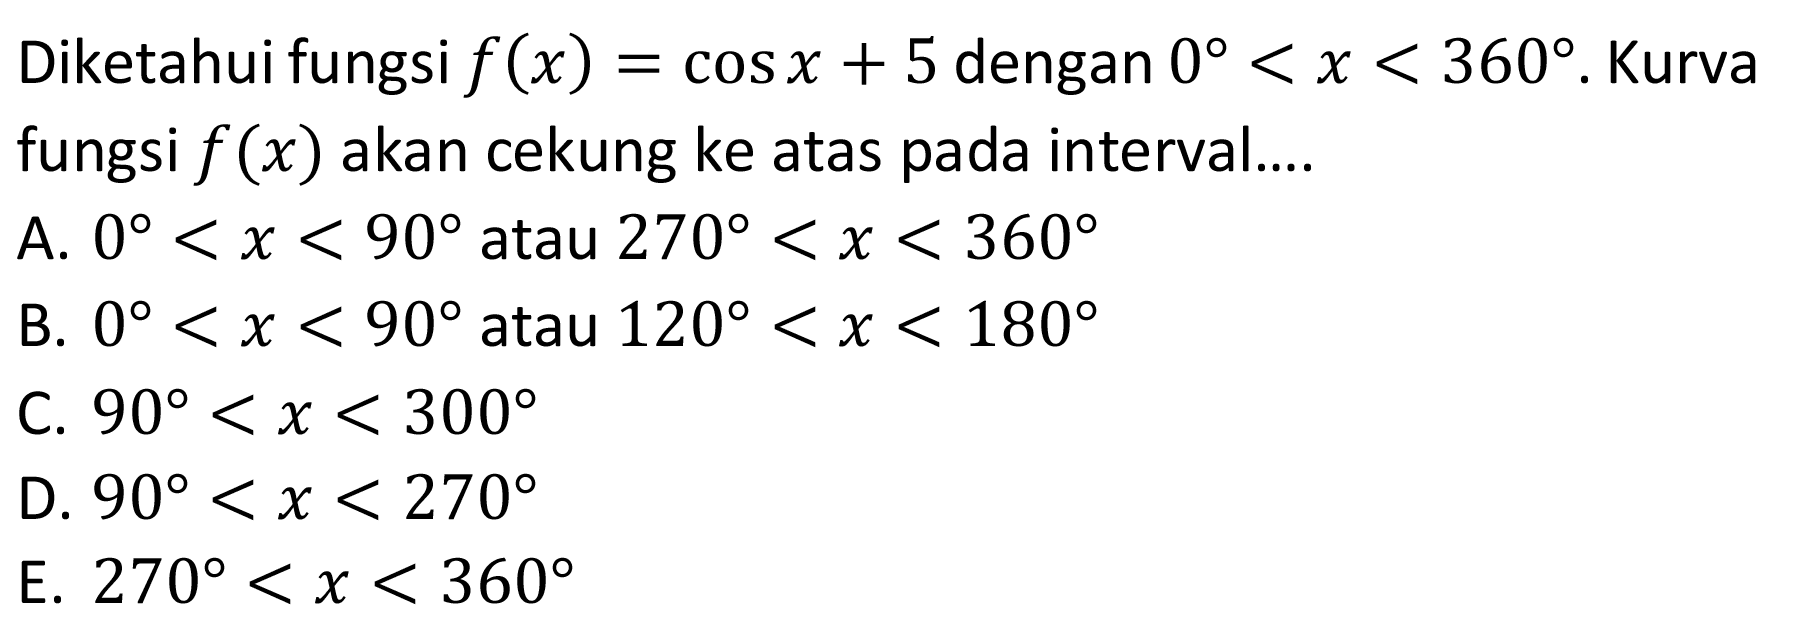 Diketahui fungsi f(x)=cosx+5 dengan 0<x<360. Kurva fungsi f(x) akan cekung ke atas pada interval...